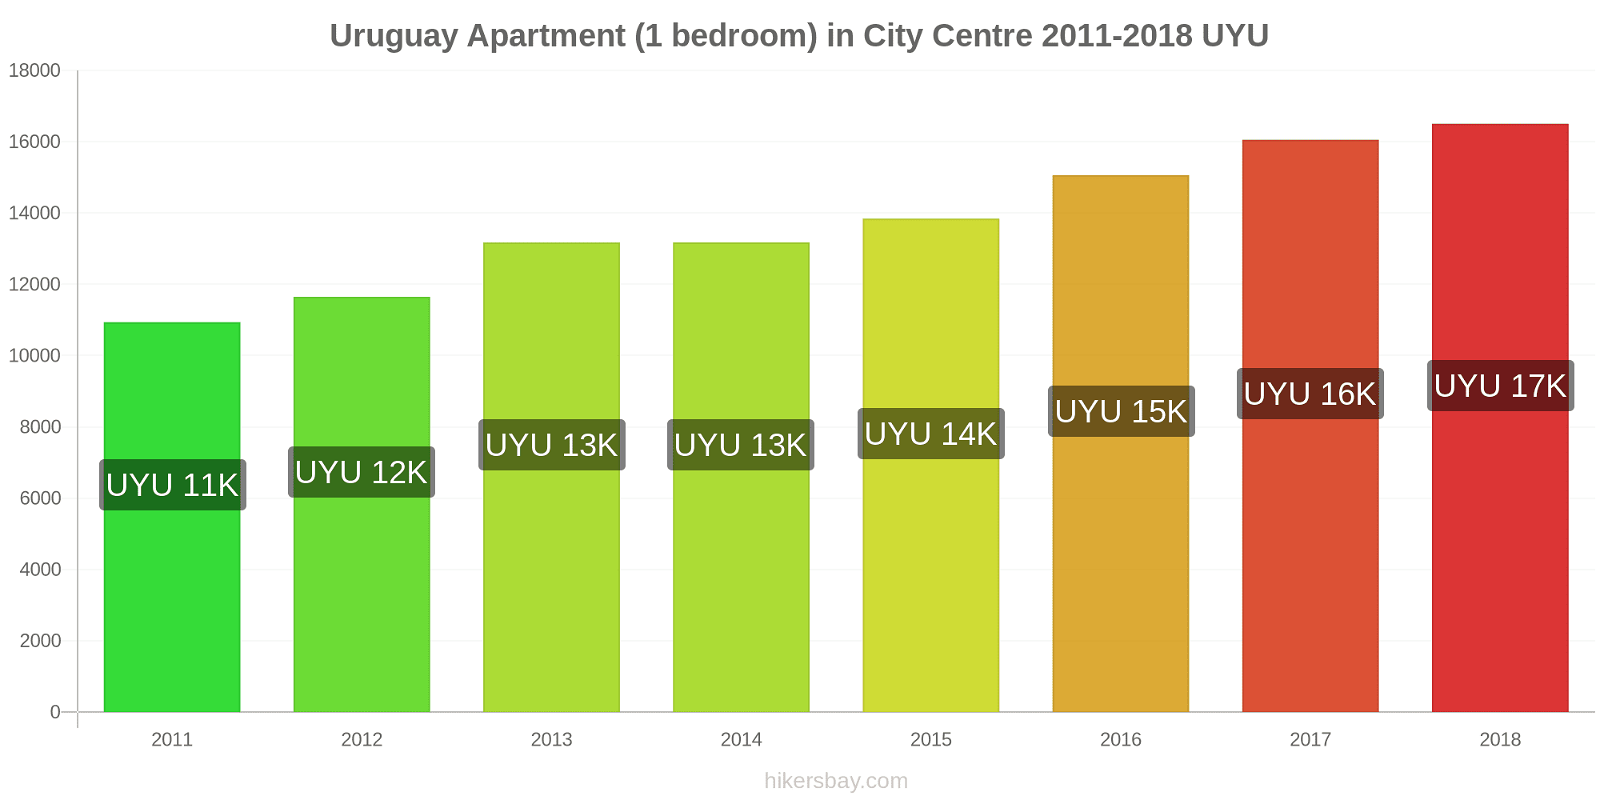 Uruguay price changes Apartment (1 bedroom) in city centre hikersbay.com